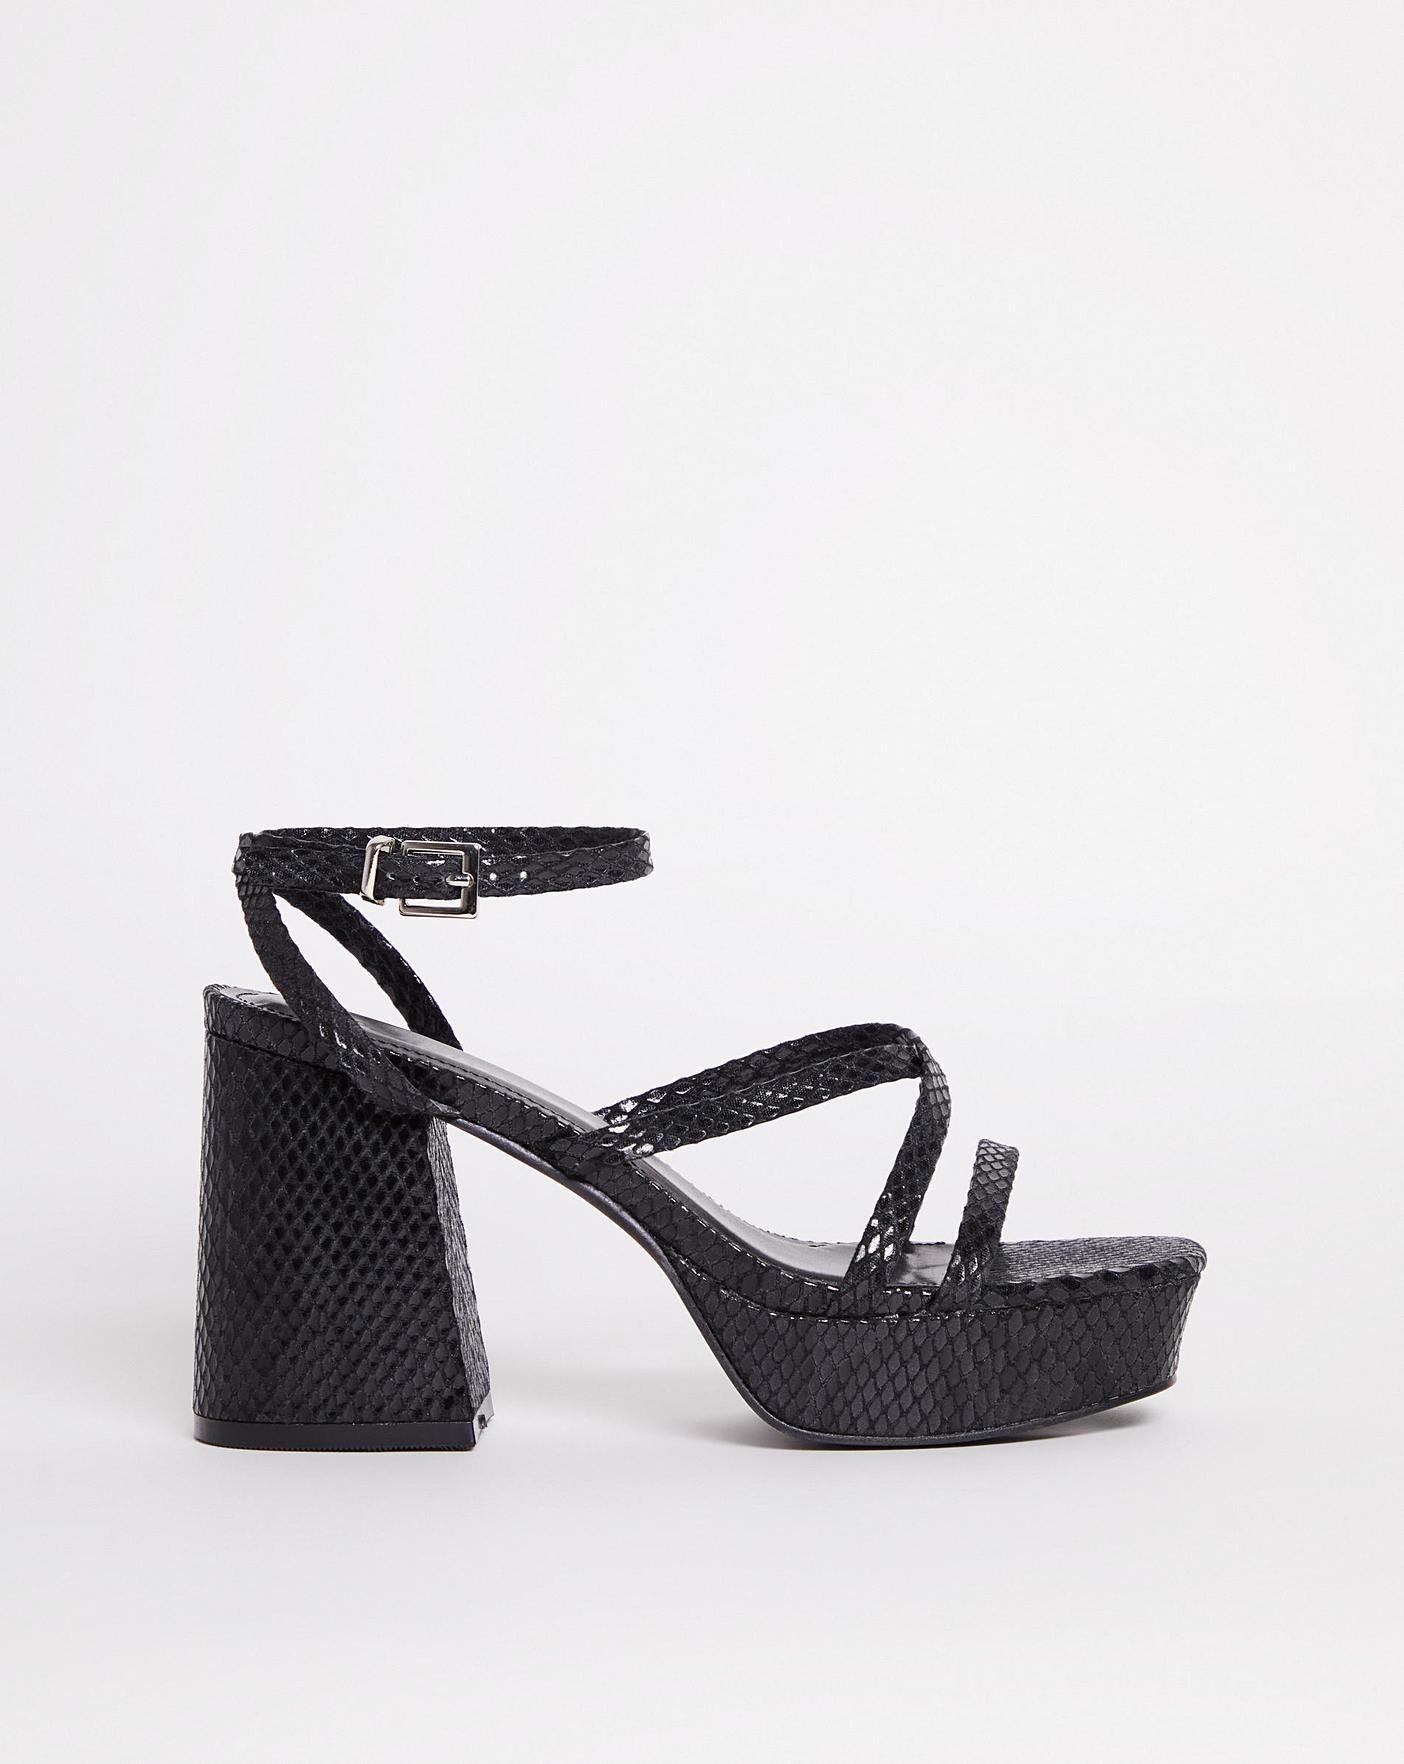 Unique Bargains Women's Platform Gladiator Strappy Stiletto Heels Sandals -  Walmart.com